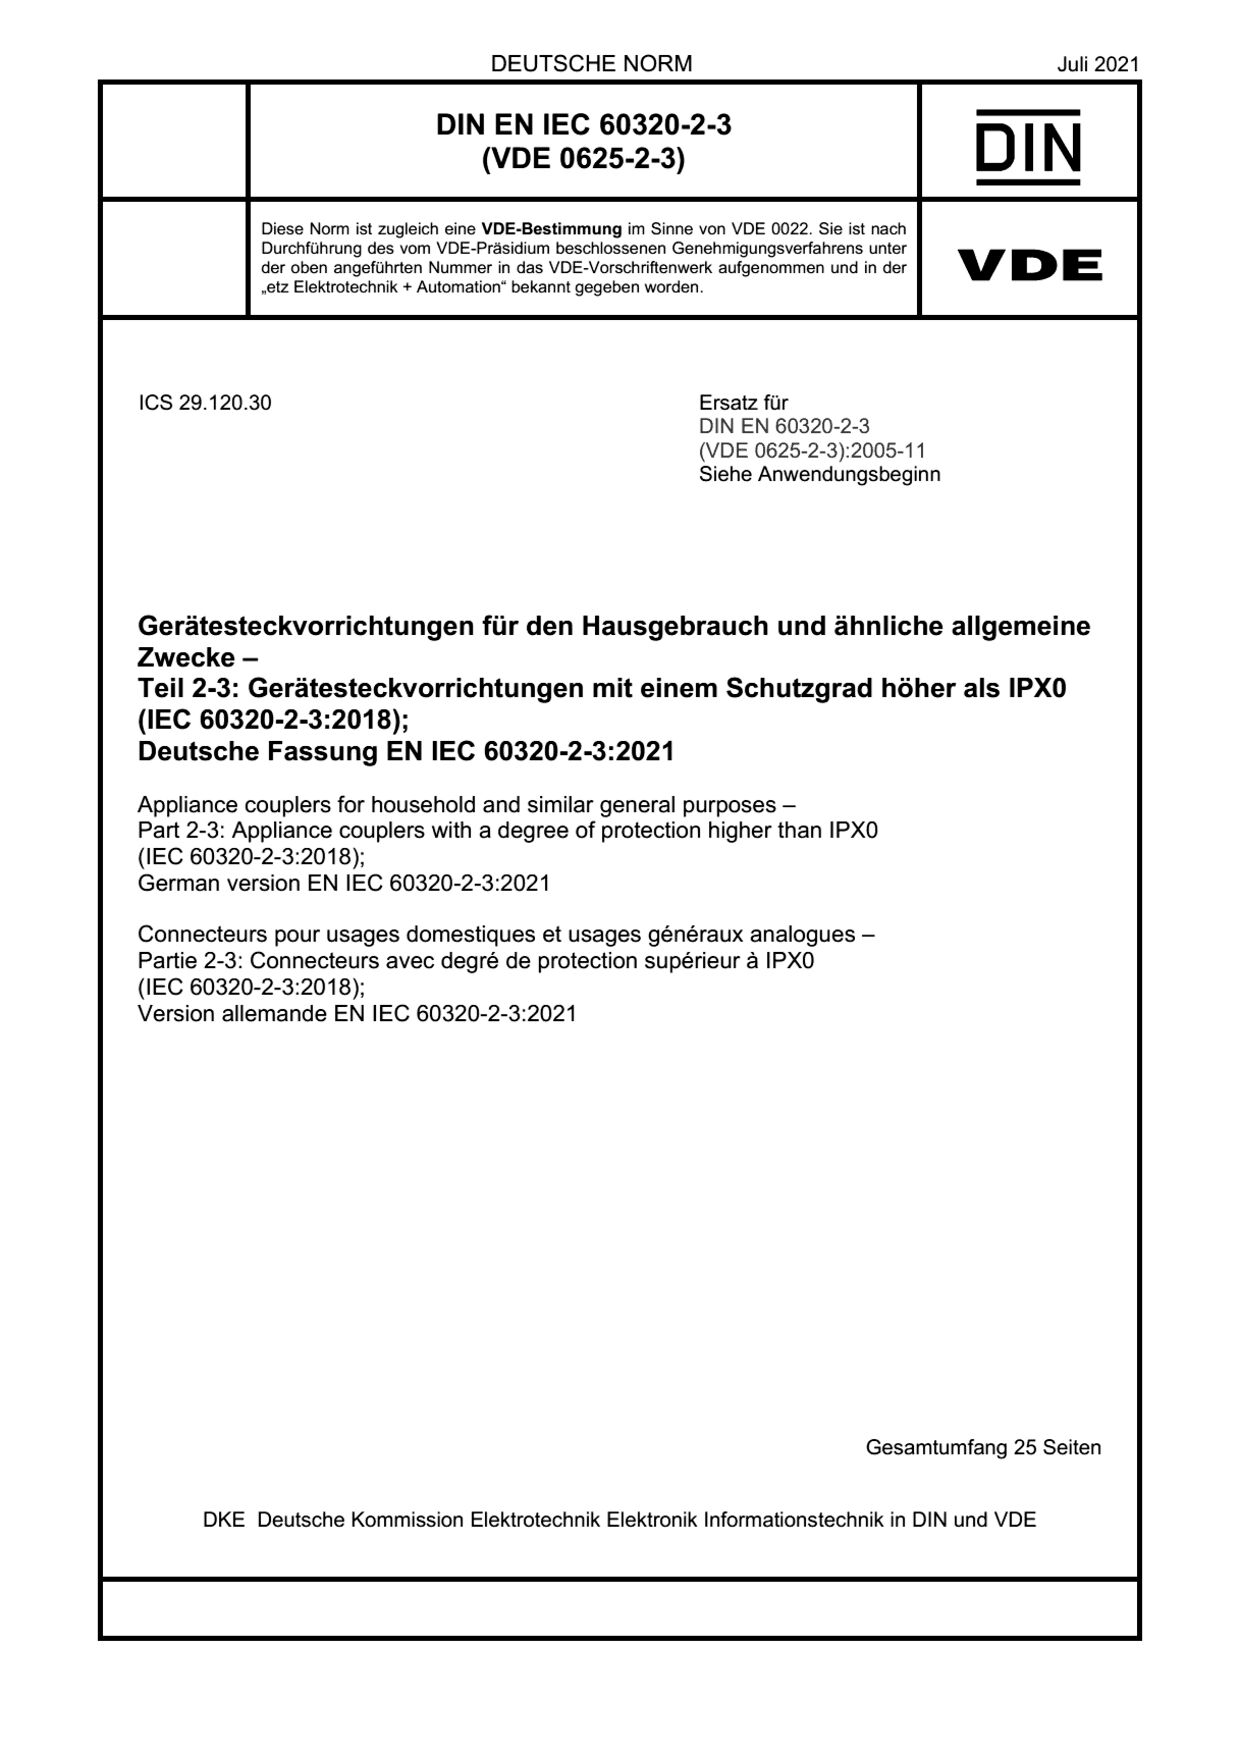 DIN EN IEC 60320-2-3:2021